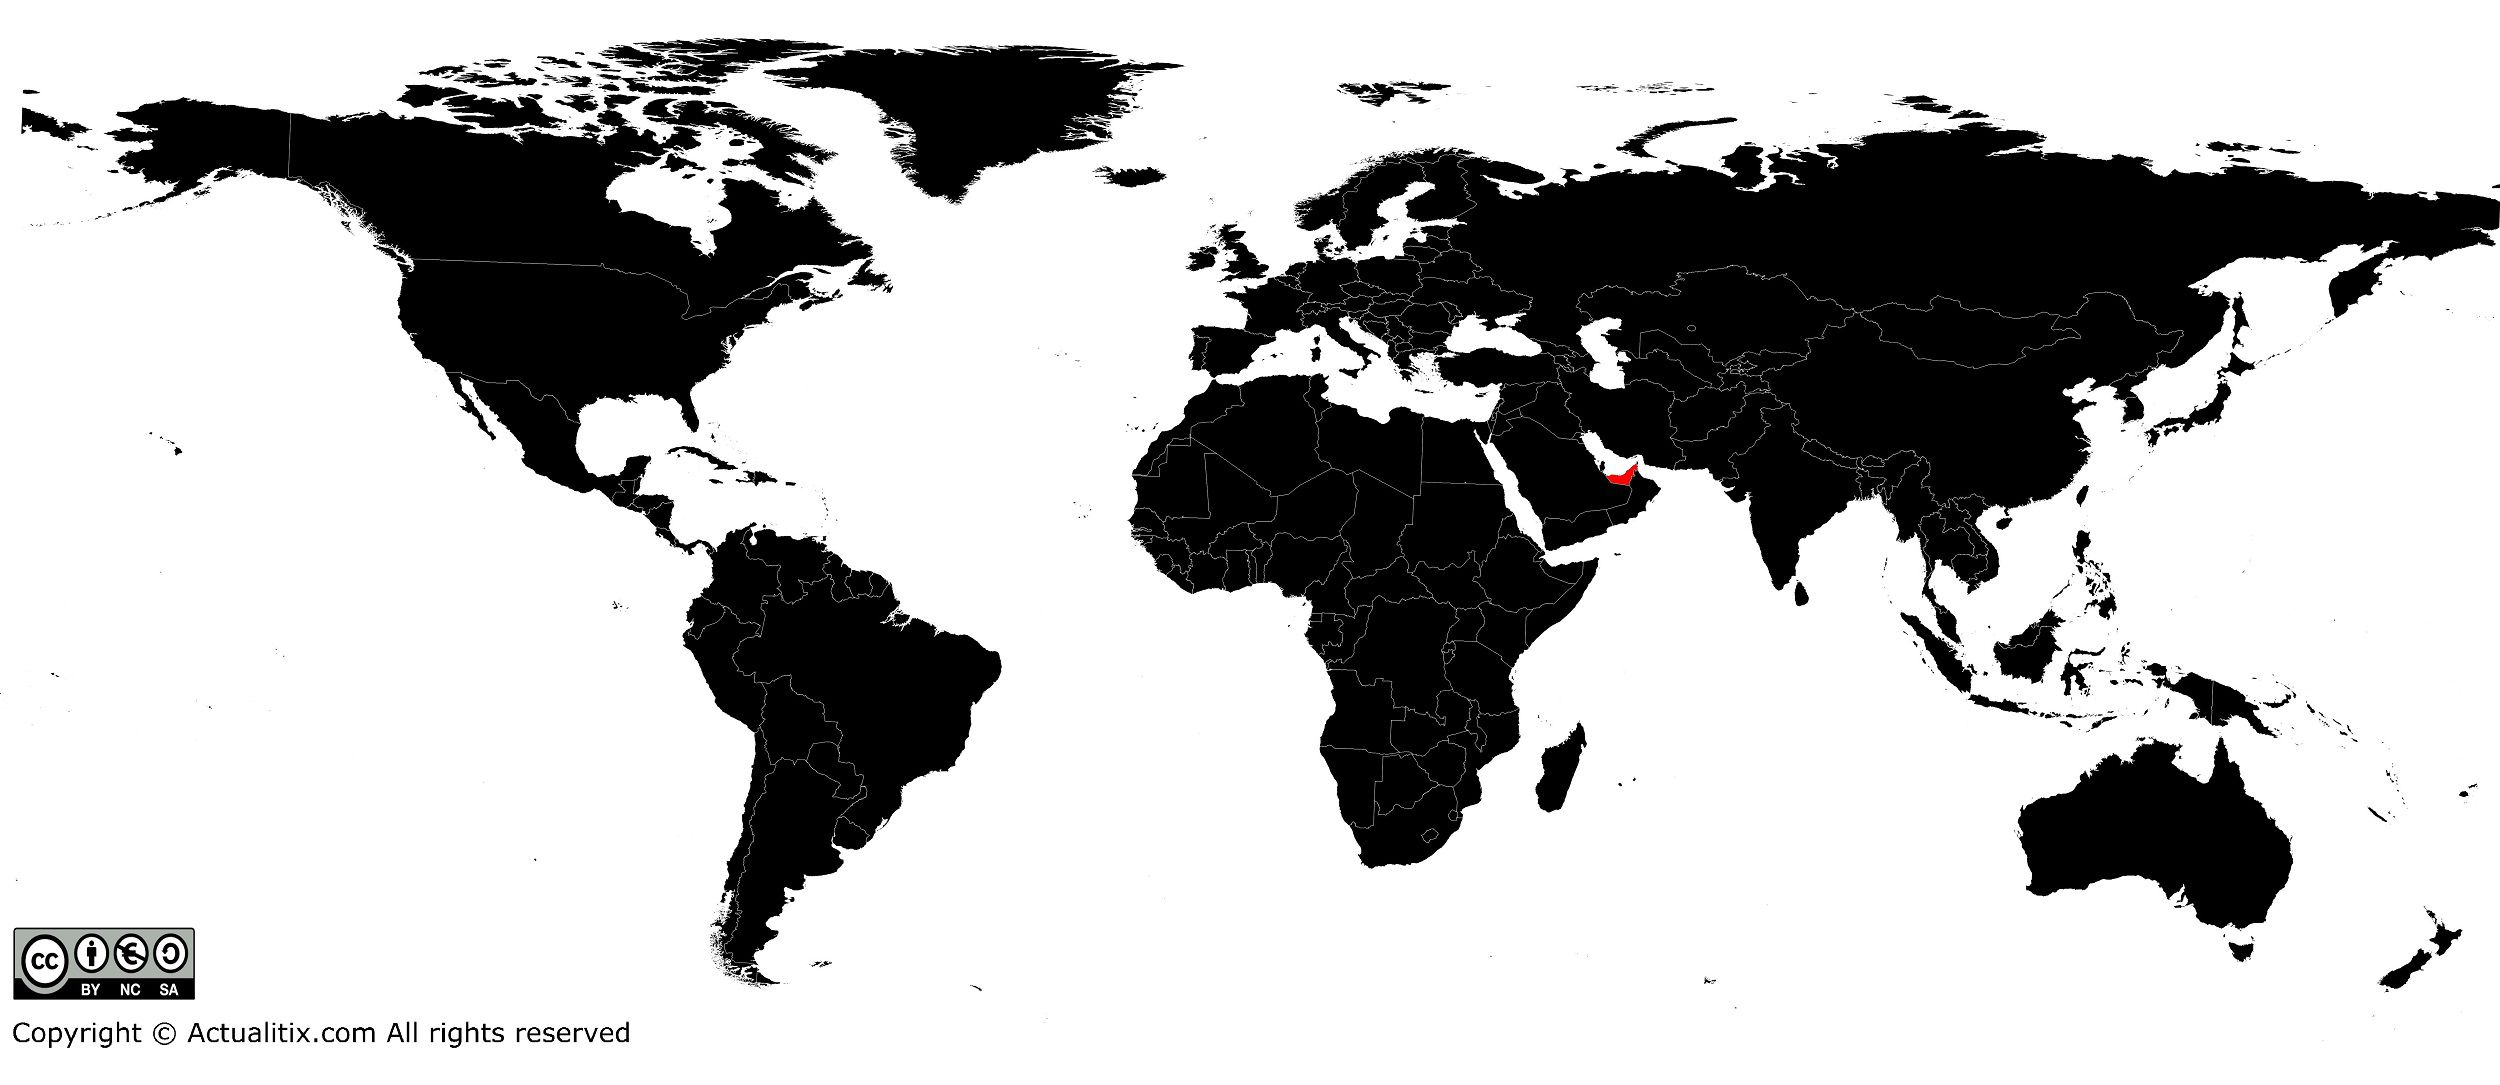 Emirats arabes unis sur une carte du monde